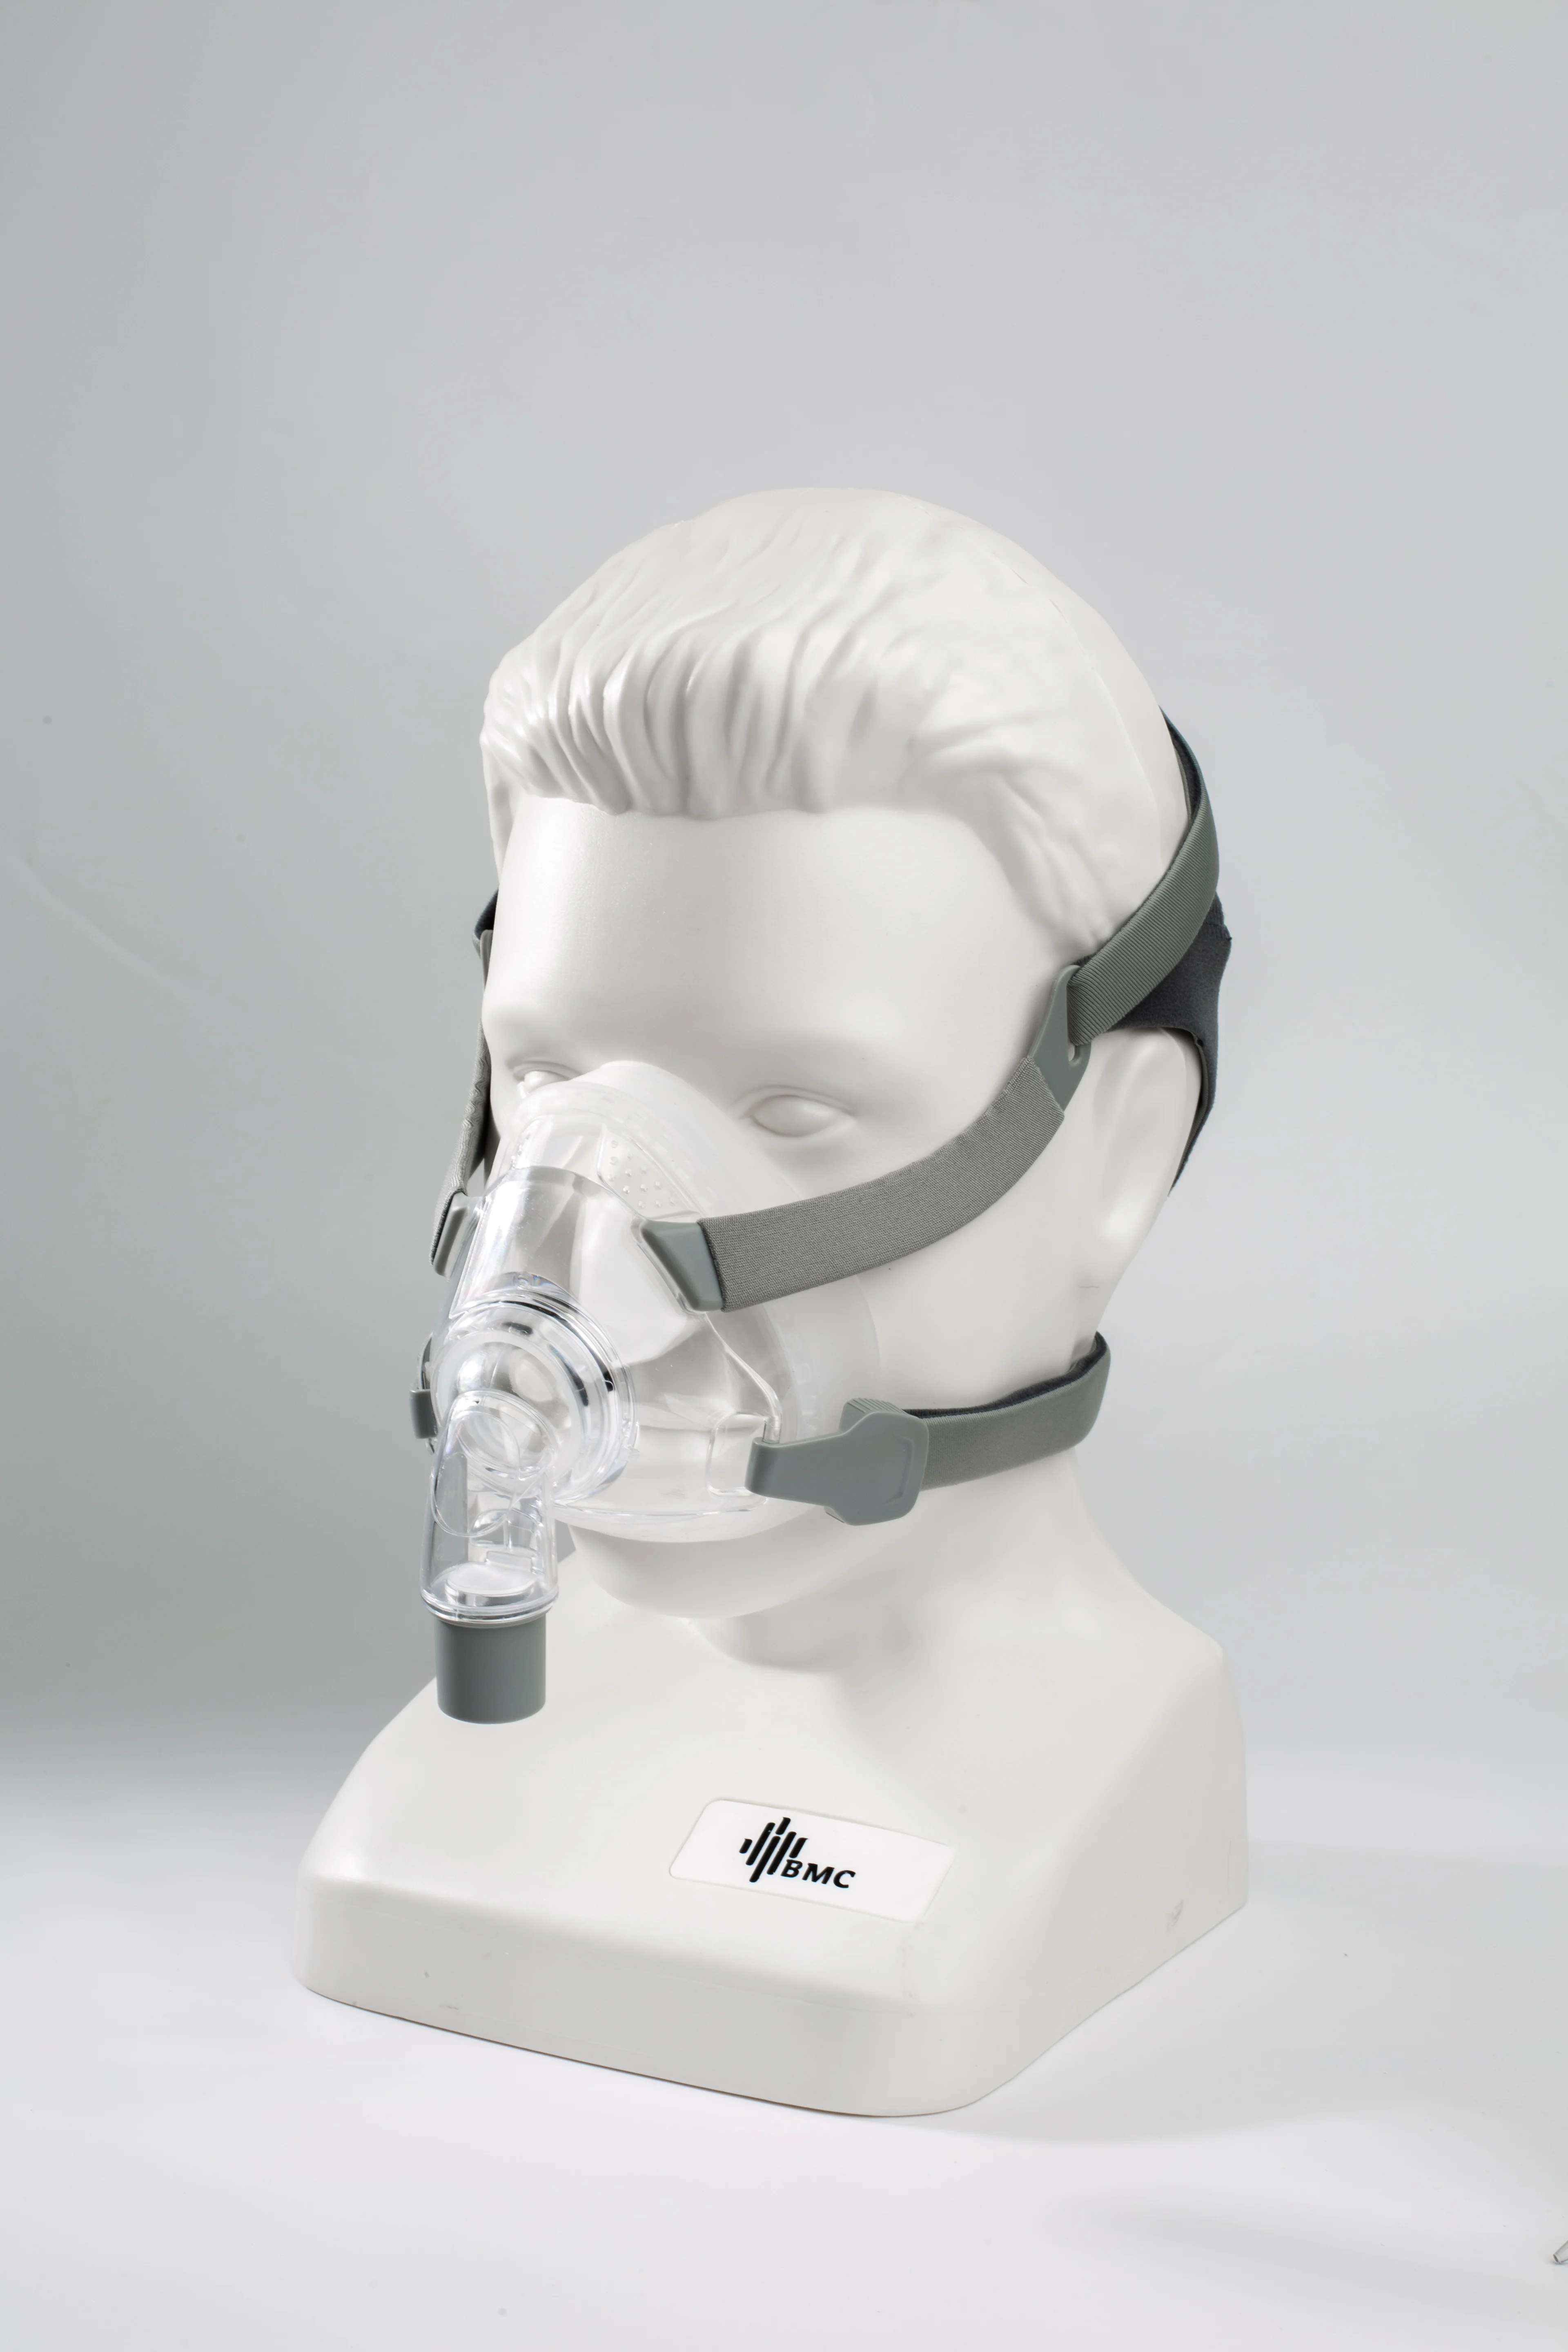 医用全面型呼吸面罩图片